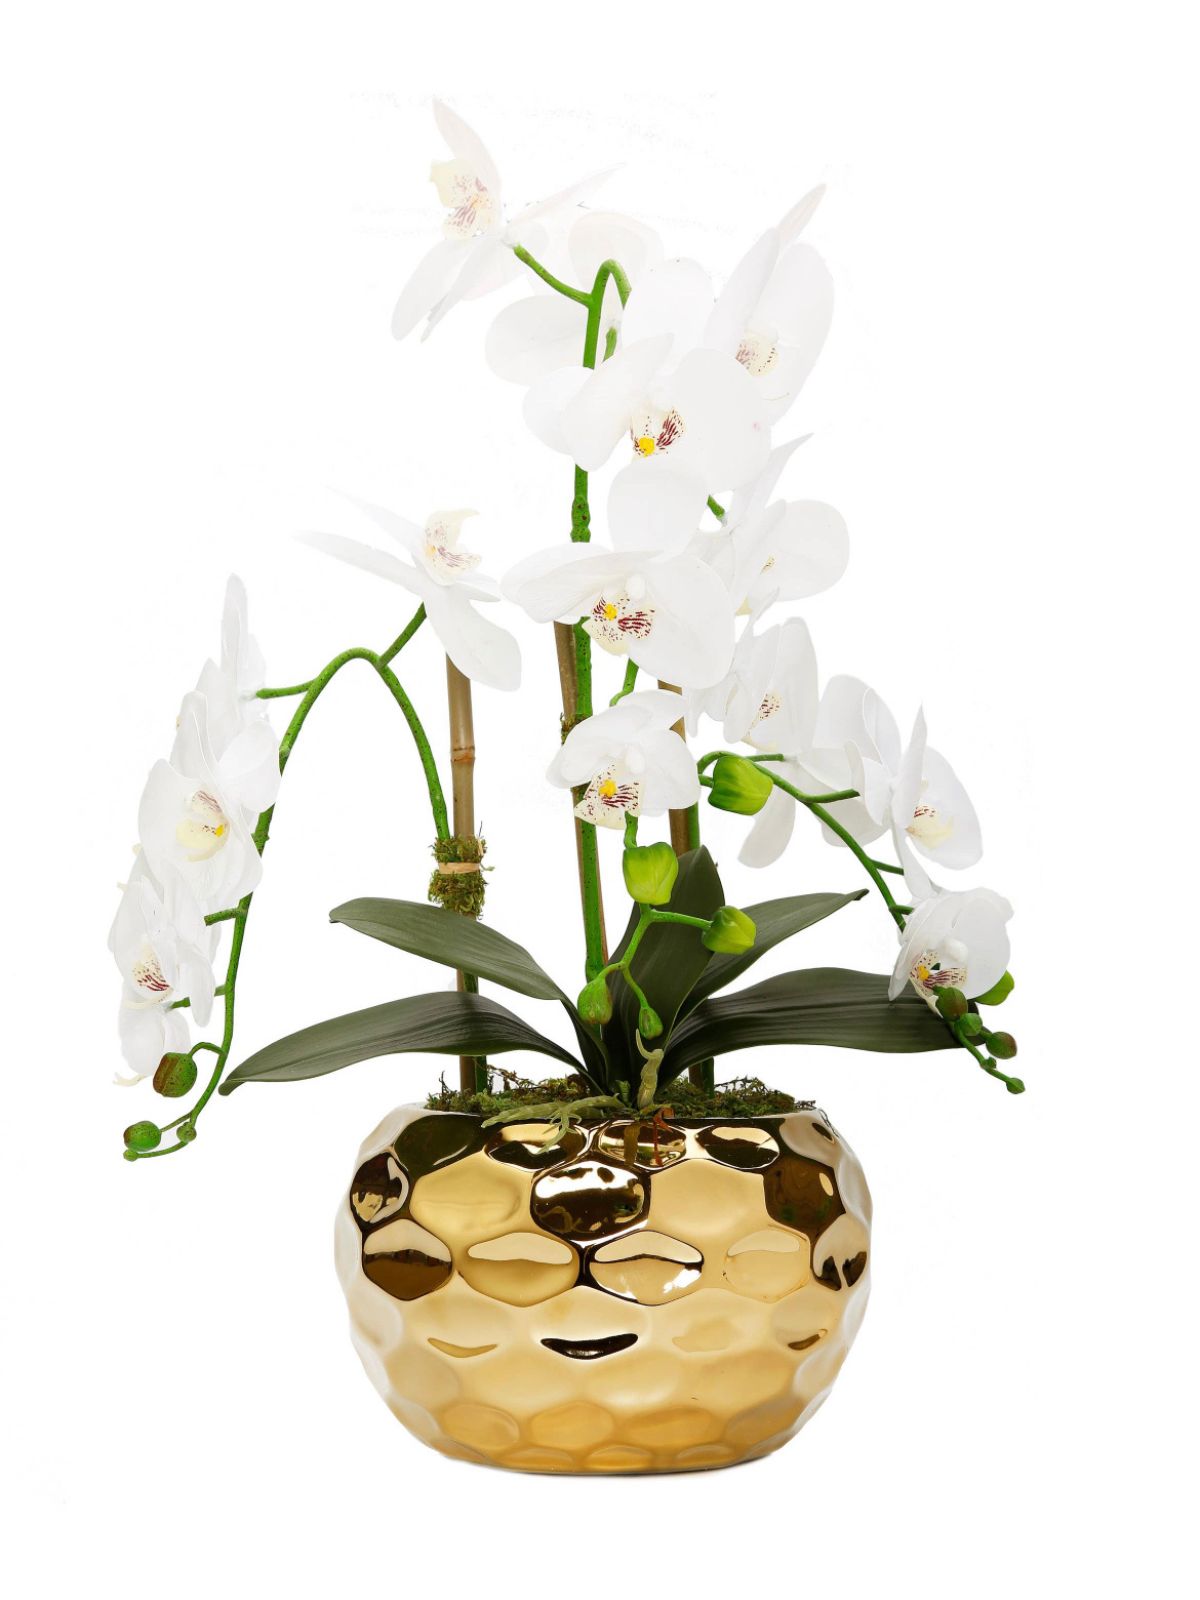 White Silk Orchid Floral Arrangement in Gold Hammered Porcelain Vase - KYA Home Decor.